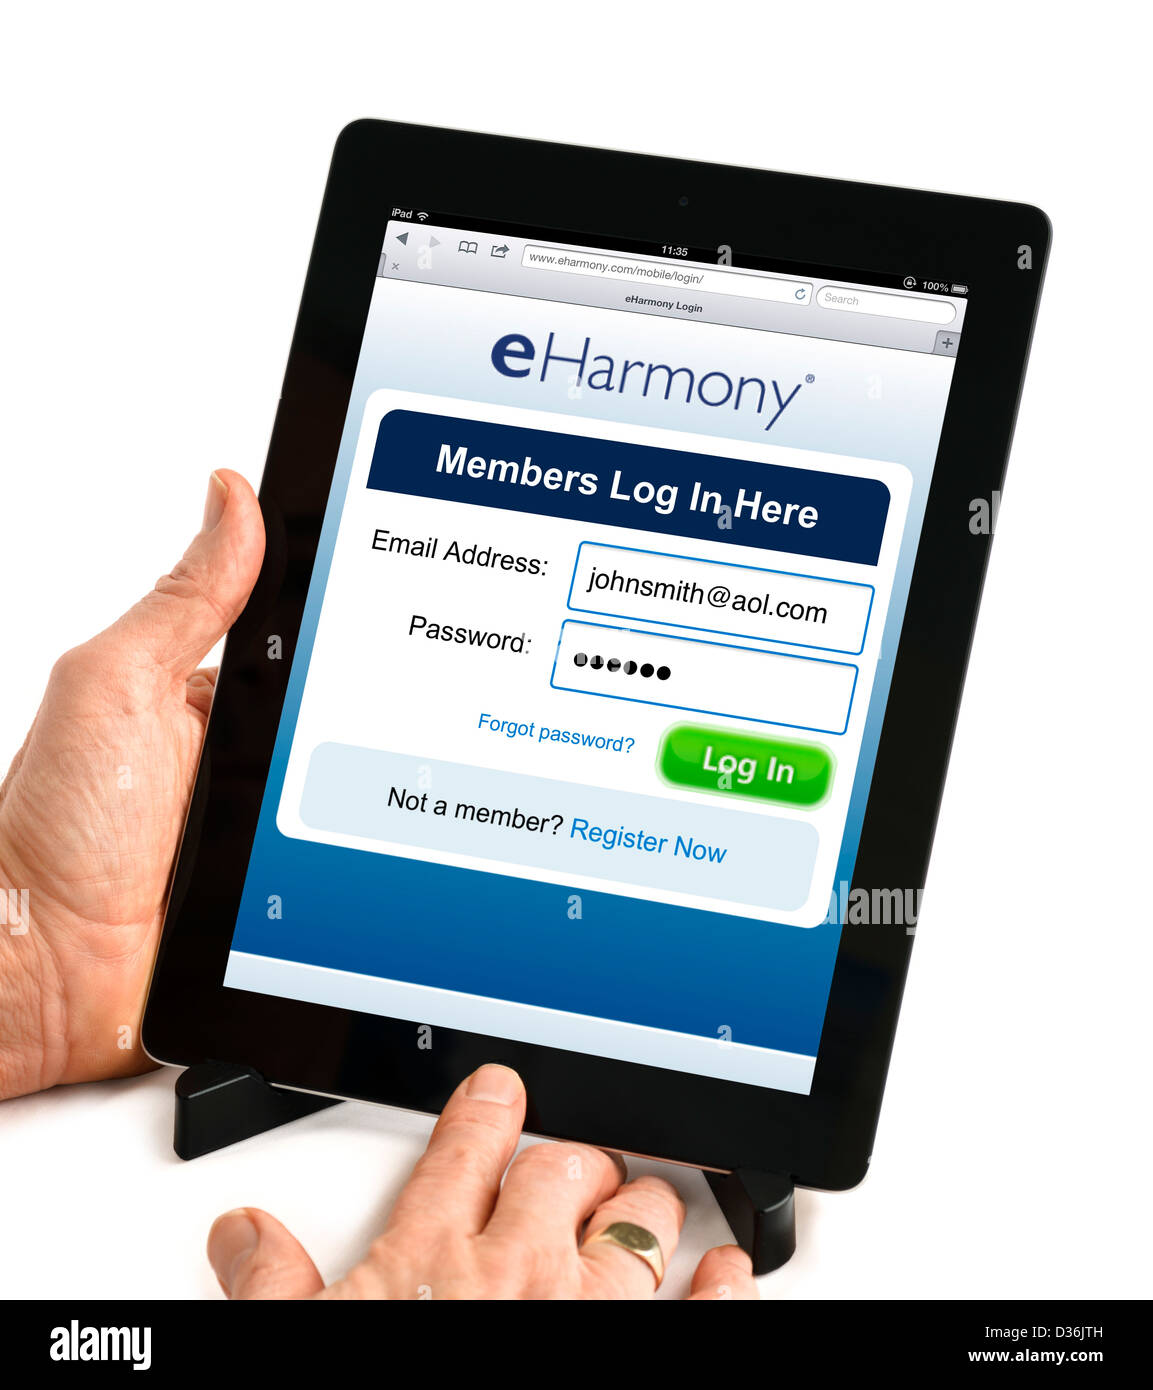 Melden Sie sich im Bildschirm von der online-dating Website eHarmony.com 4. Generation Apple iPad, USA Stockfoto